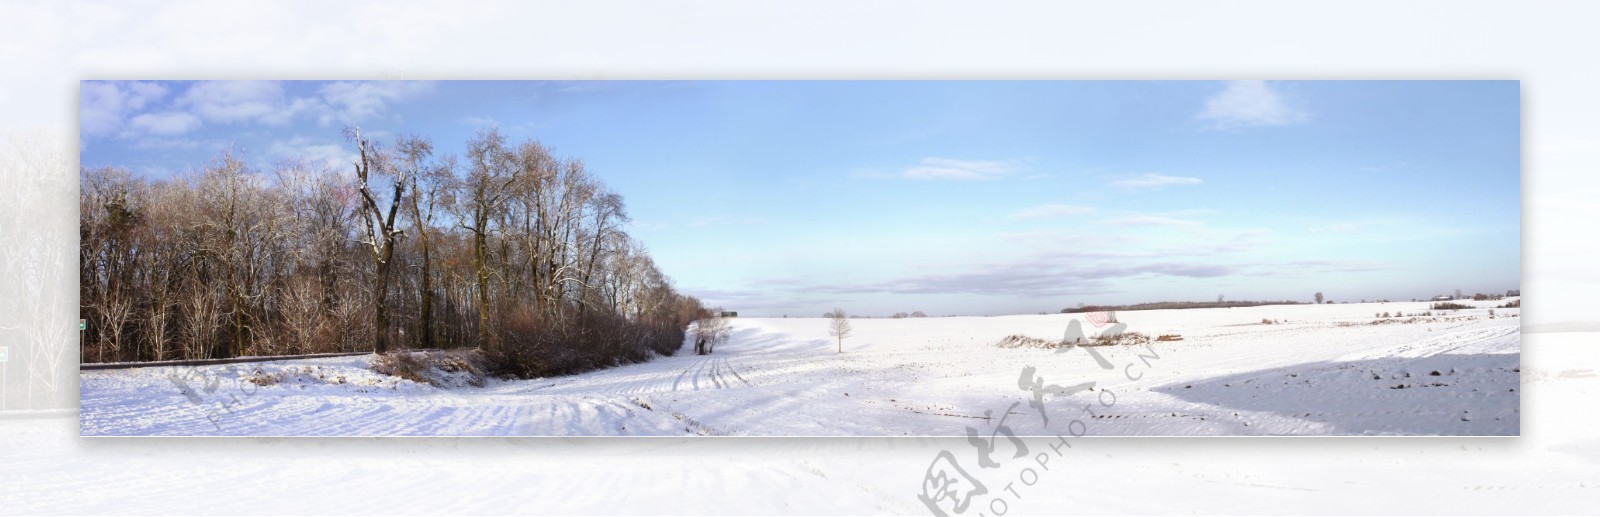 雪地风景图片